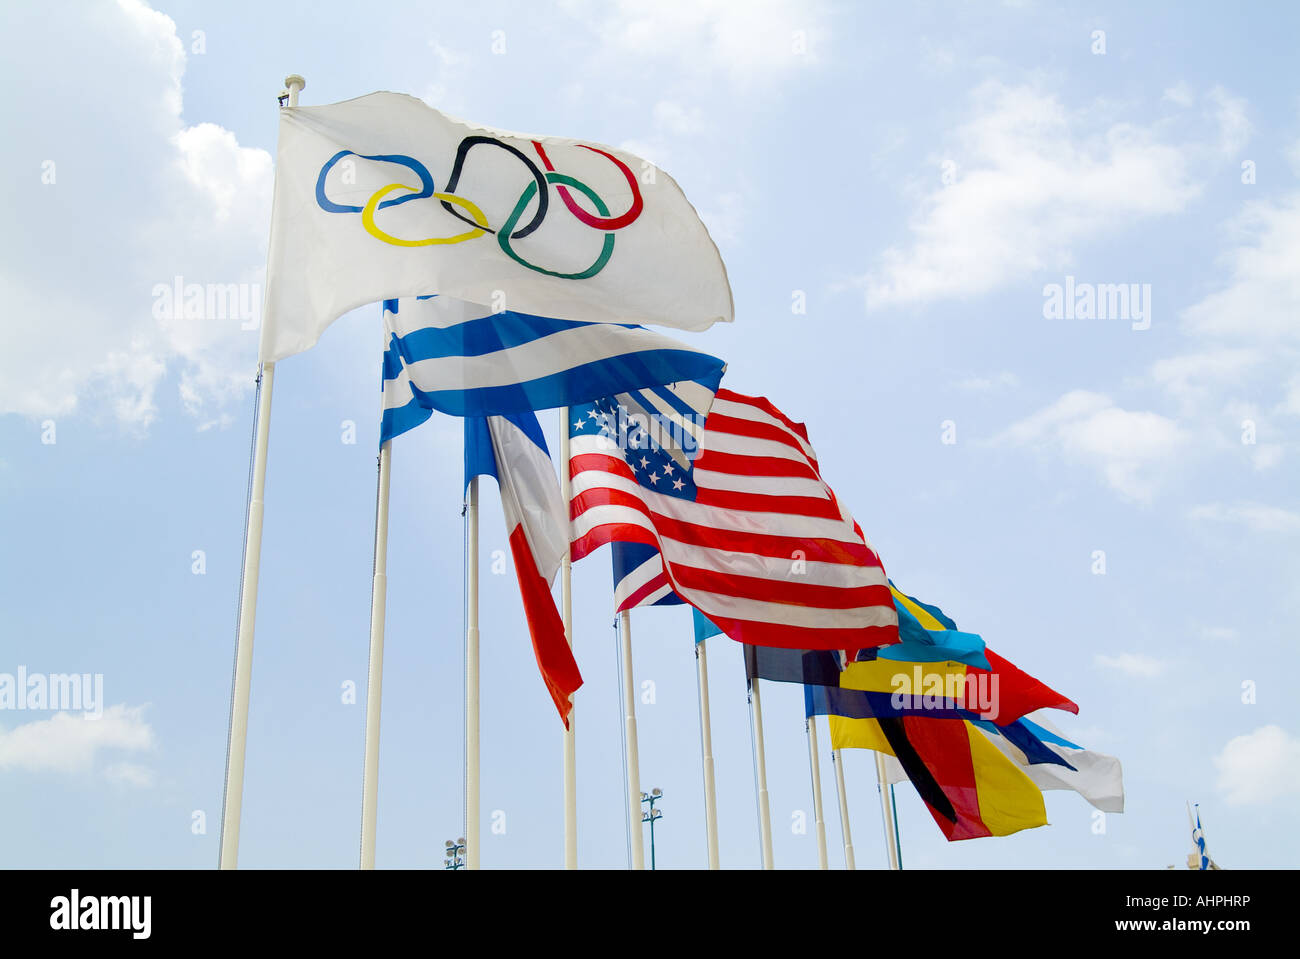 Banderas olímpicas, Atenas Foto de stock